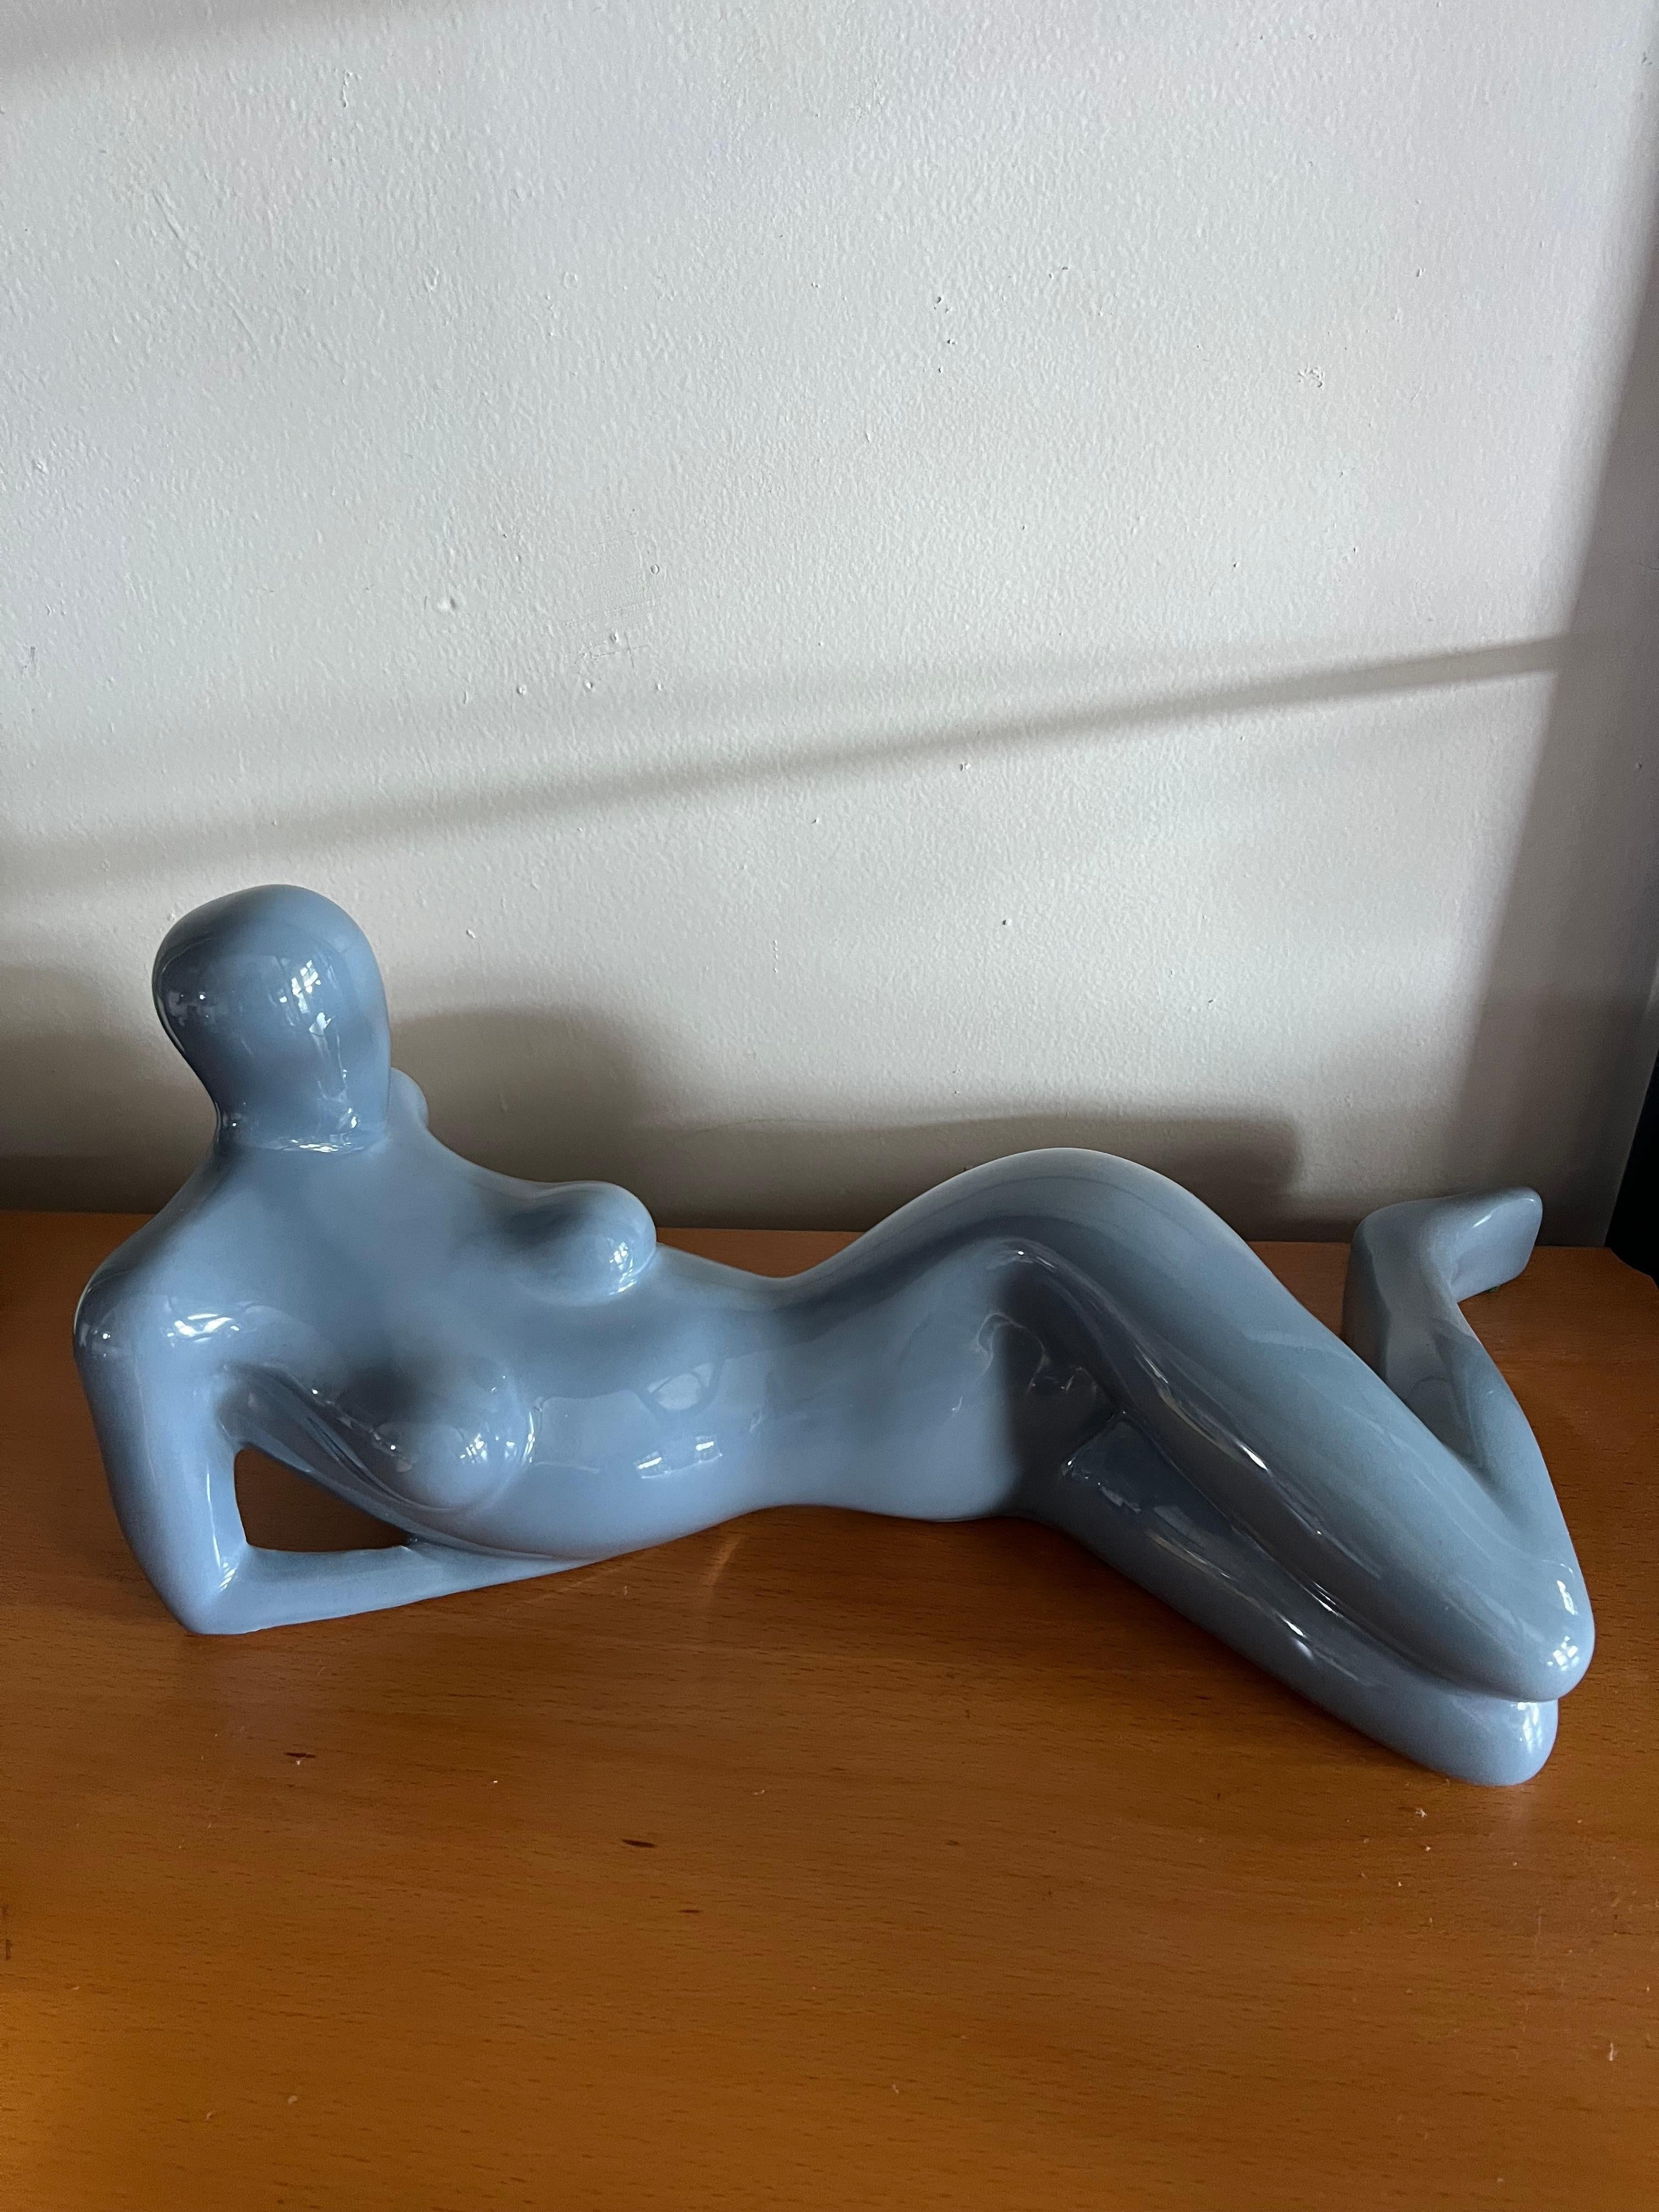 Une sculpture en céramique émaillée de ©Jaru en bleu. La sculpture représente une femme nue partiellement couchée sur le côté. La sculpture est un chef-d'œuvre visuel des deux côtés. Excellent état. Pas d'éclats ni de craquelures de la glaçure.